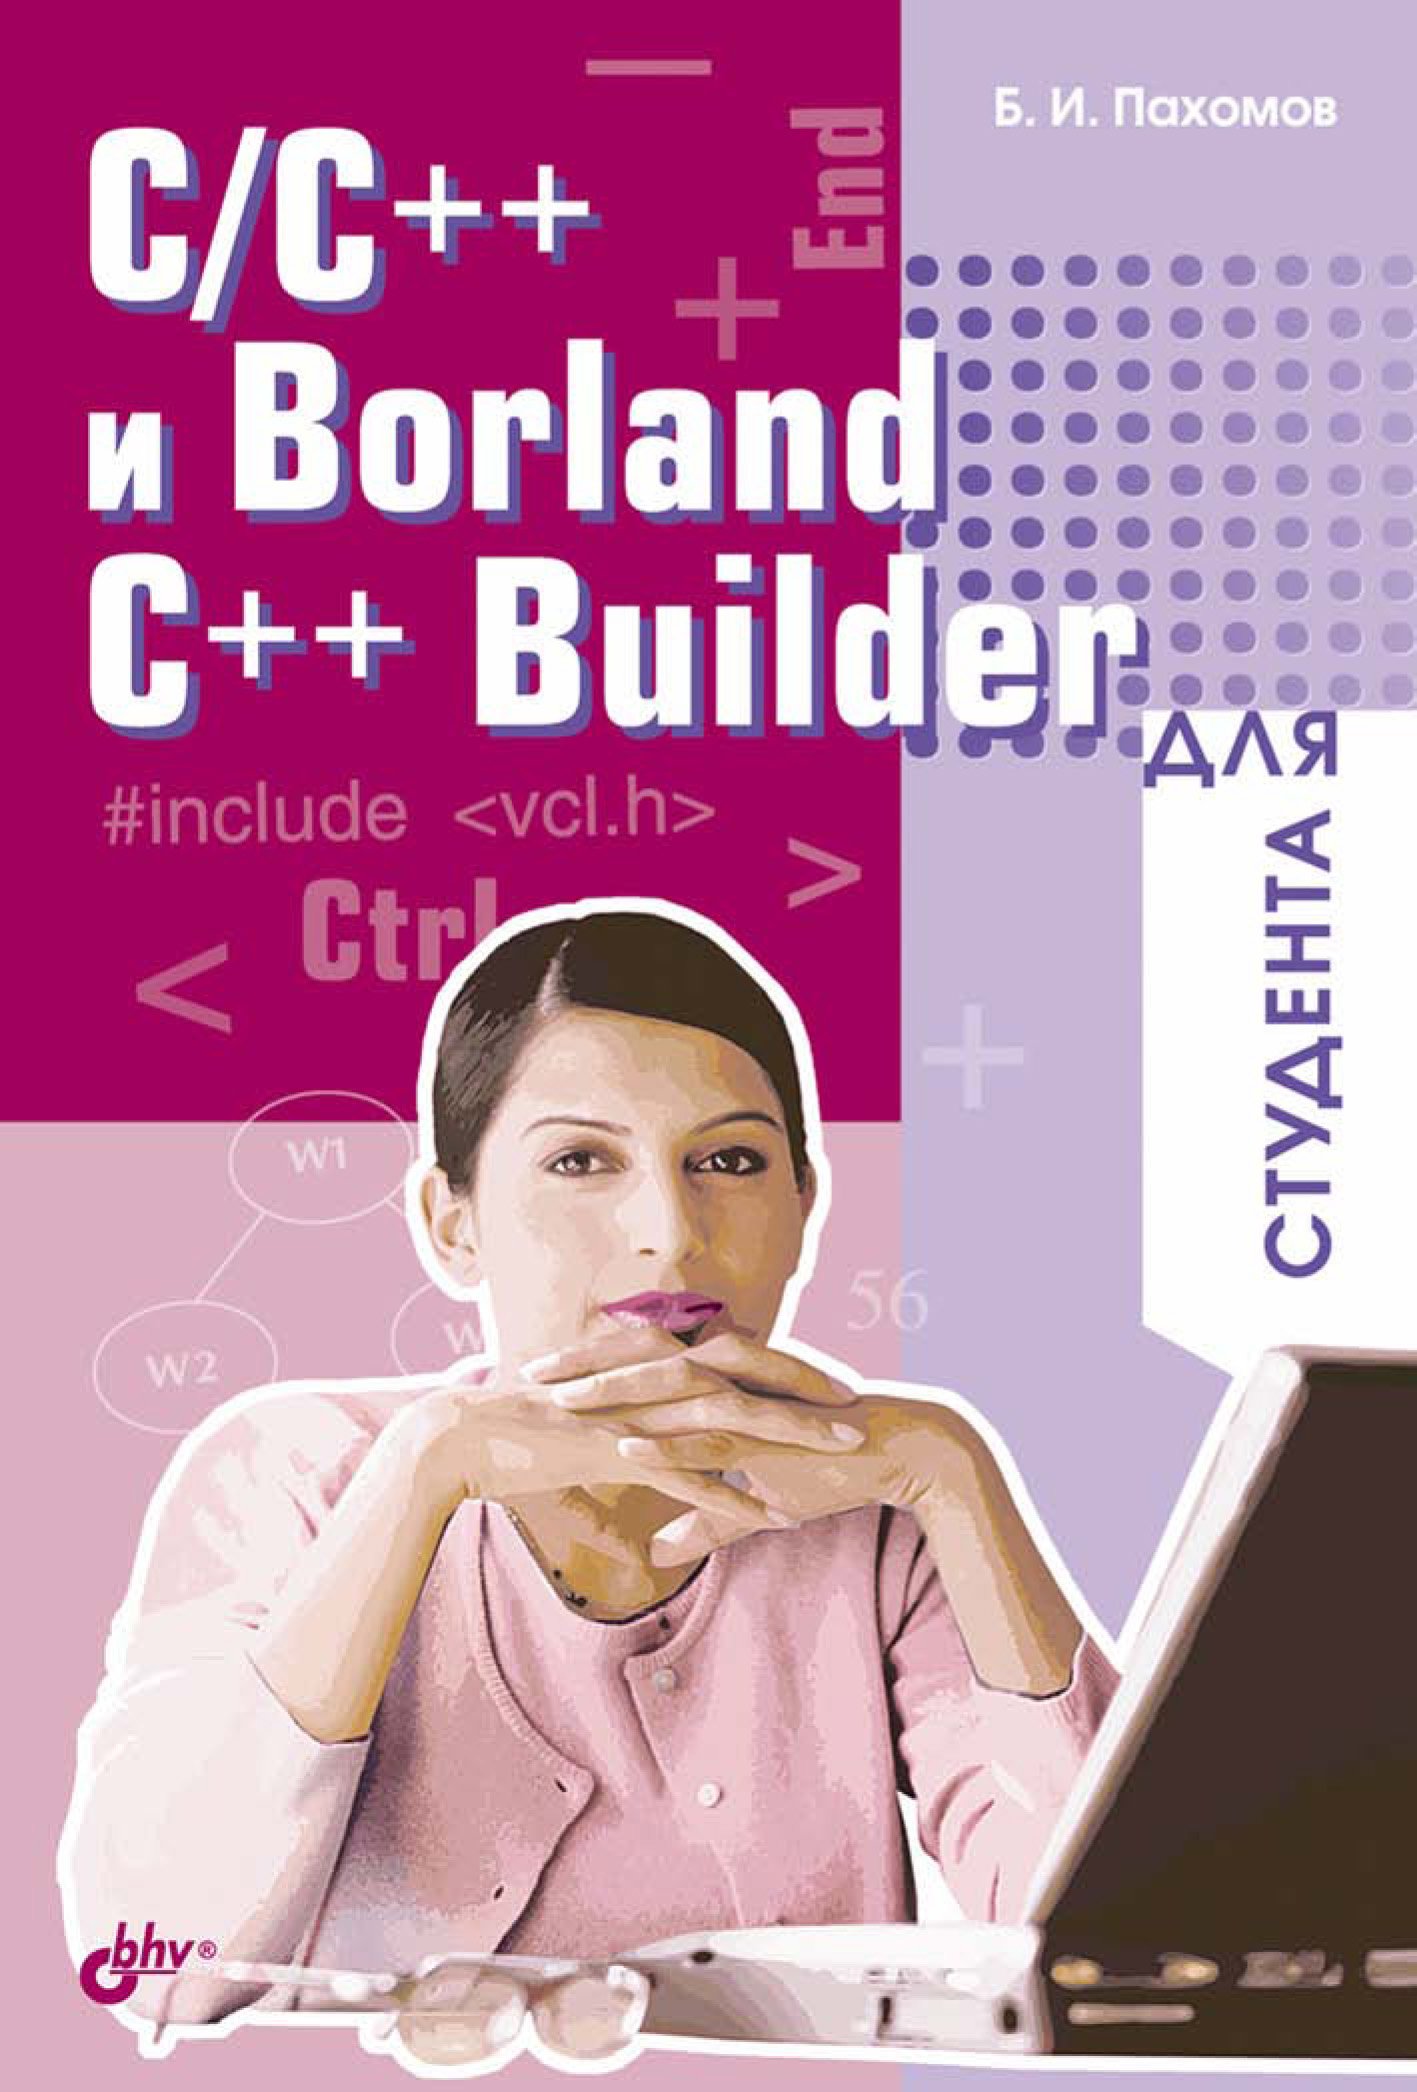 C/C++и Borland C++ Builder для студента